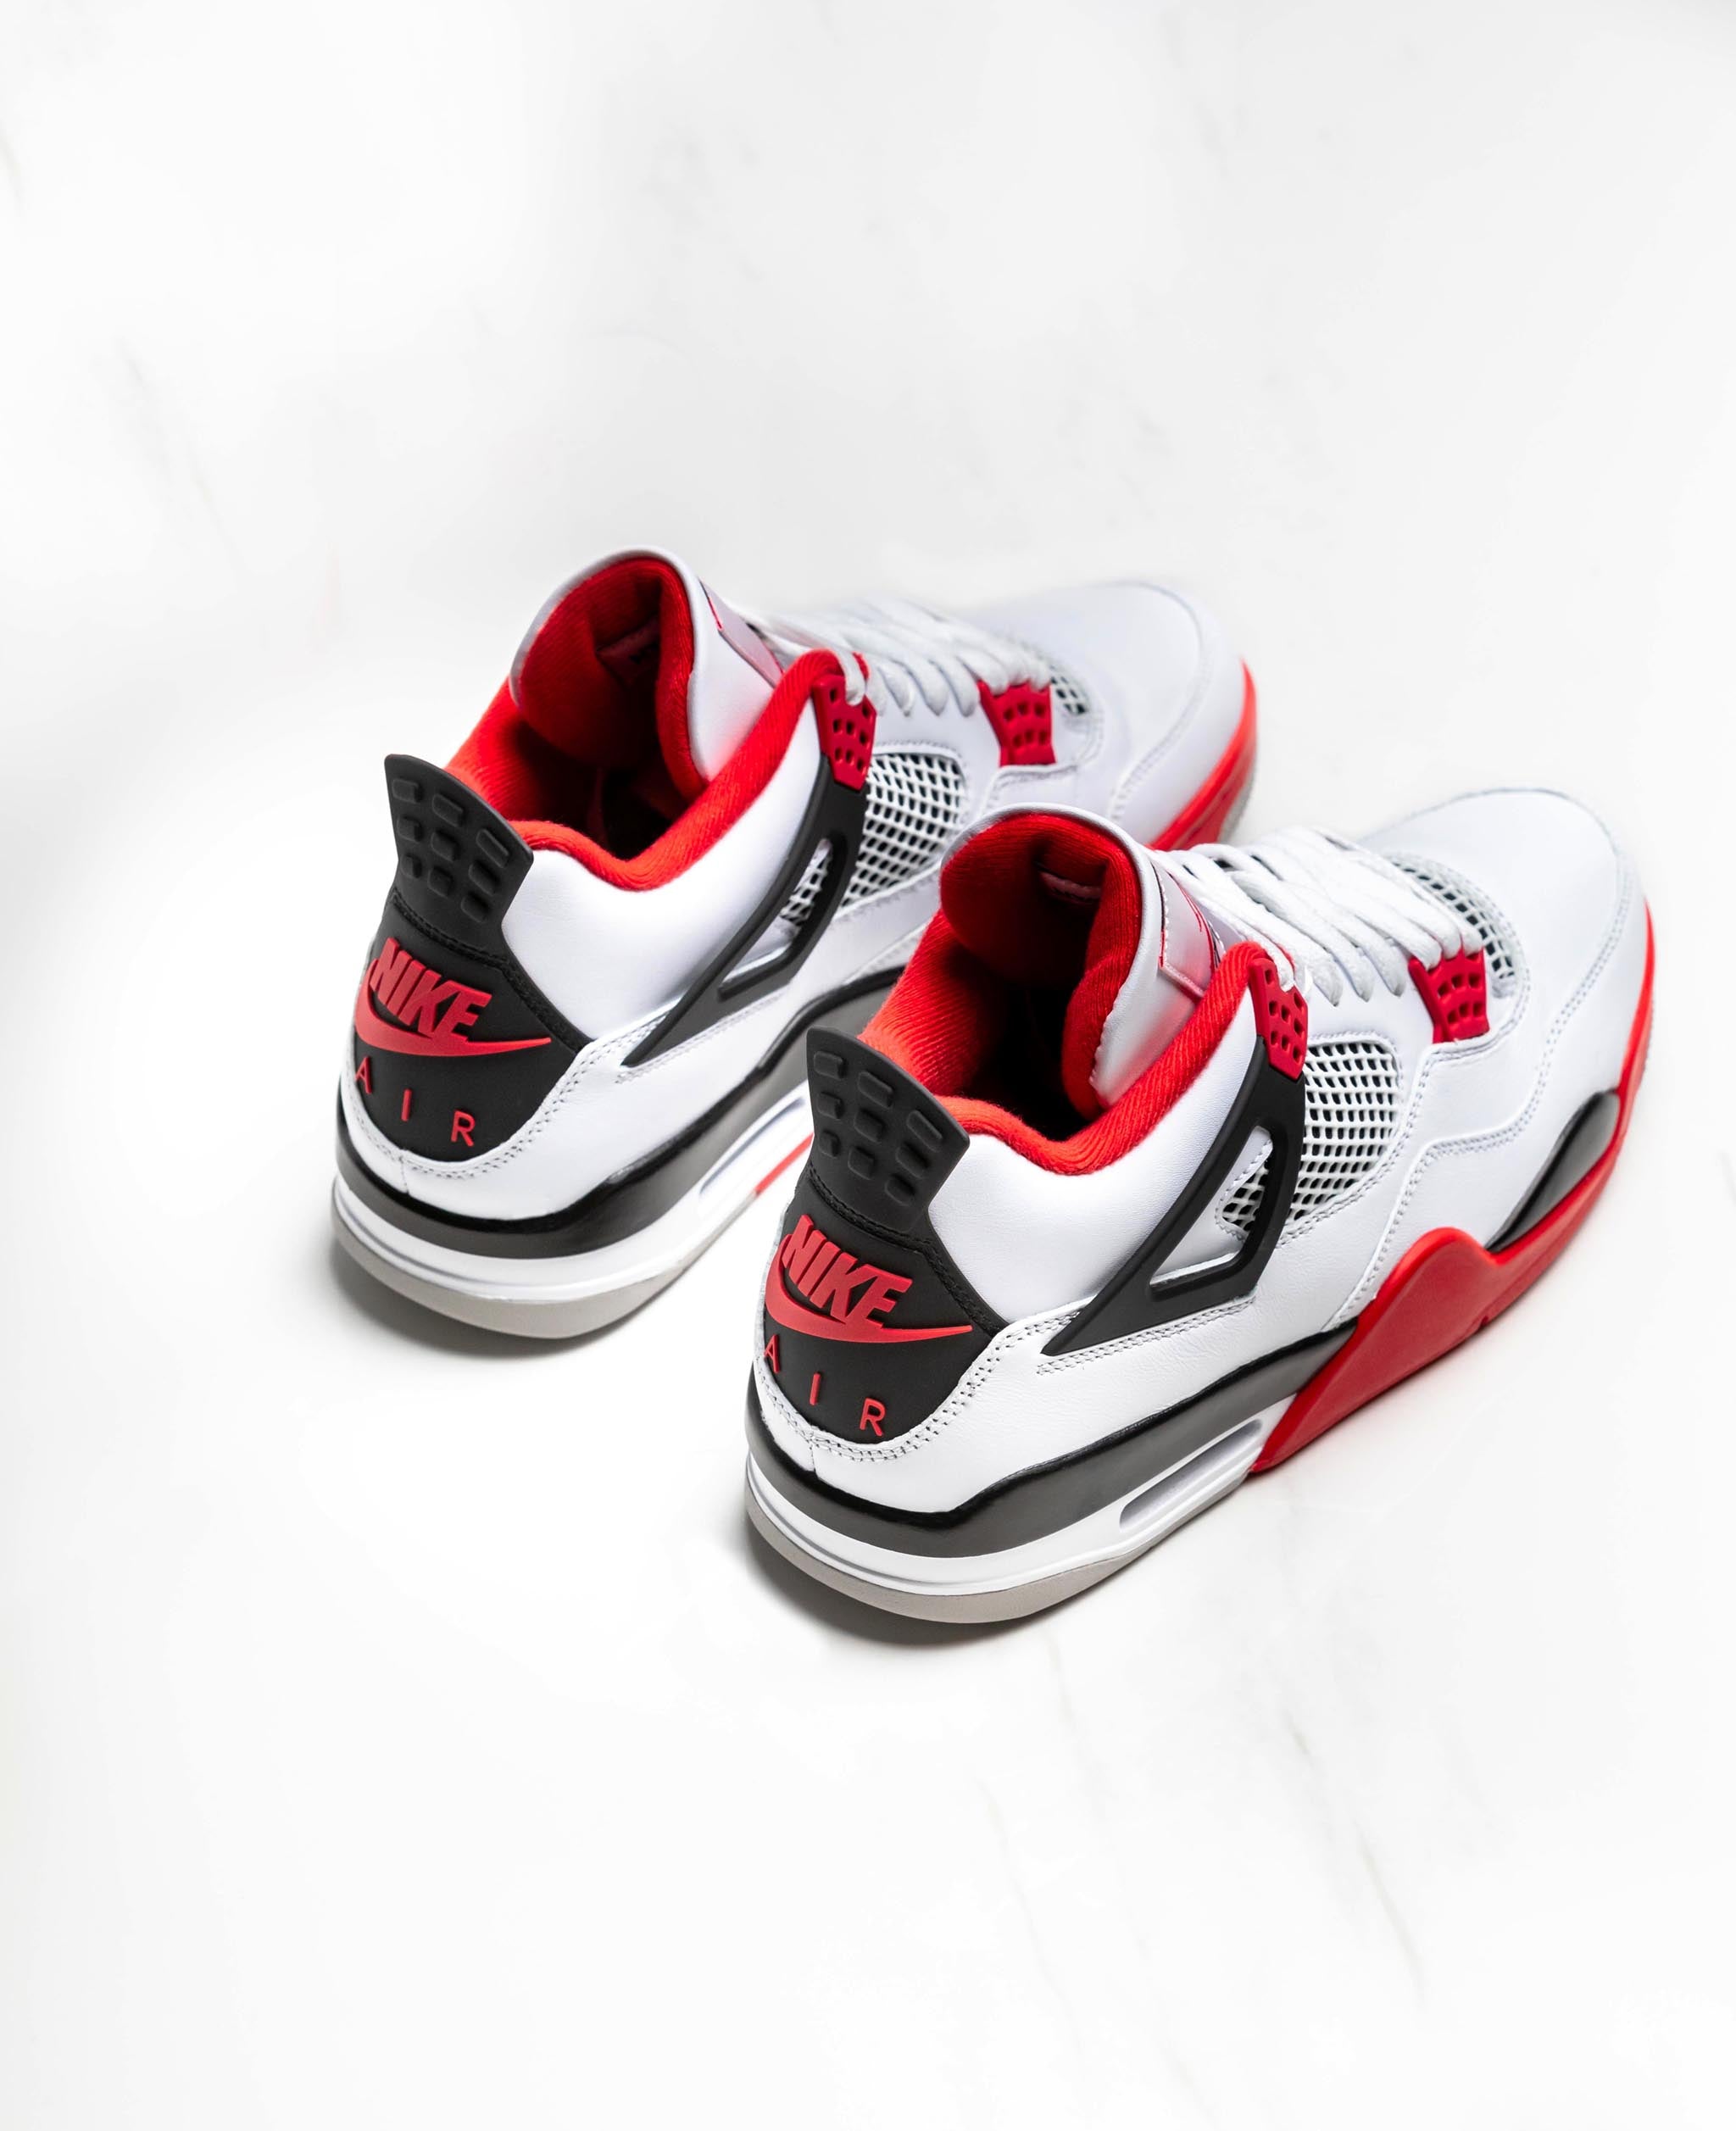 Nike Air Jordan 4 Fire Red Top Detail